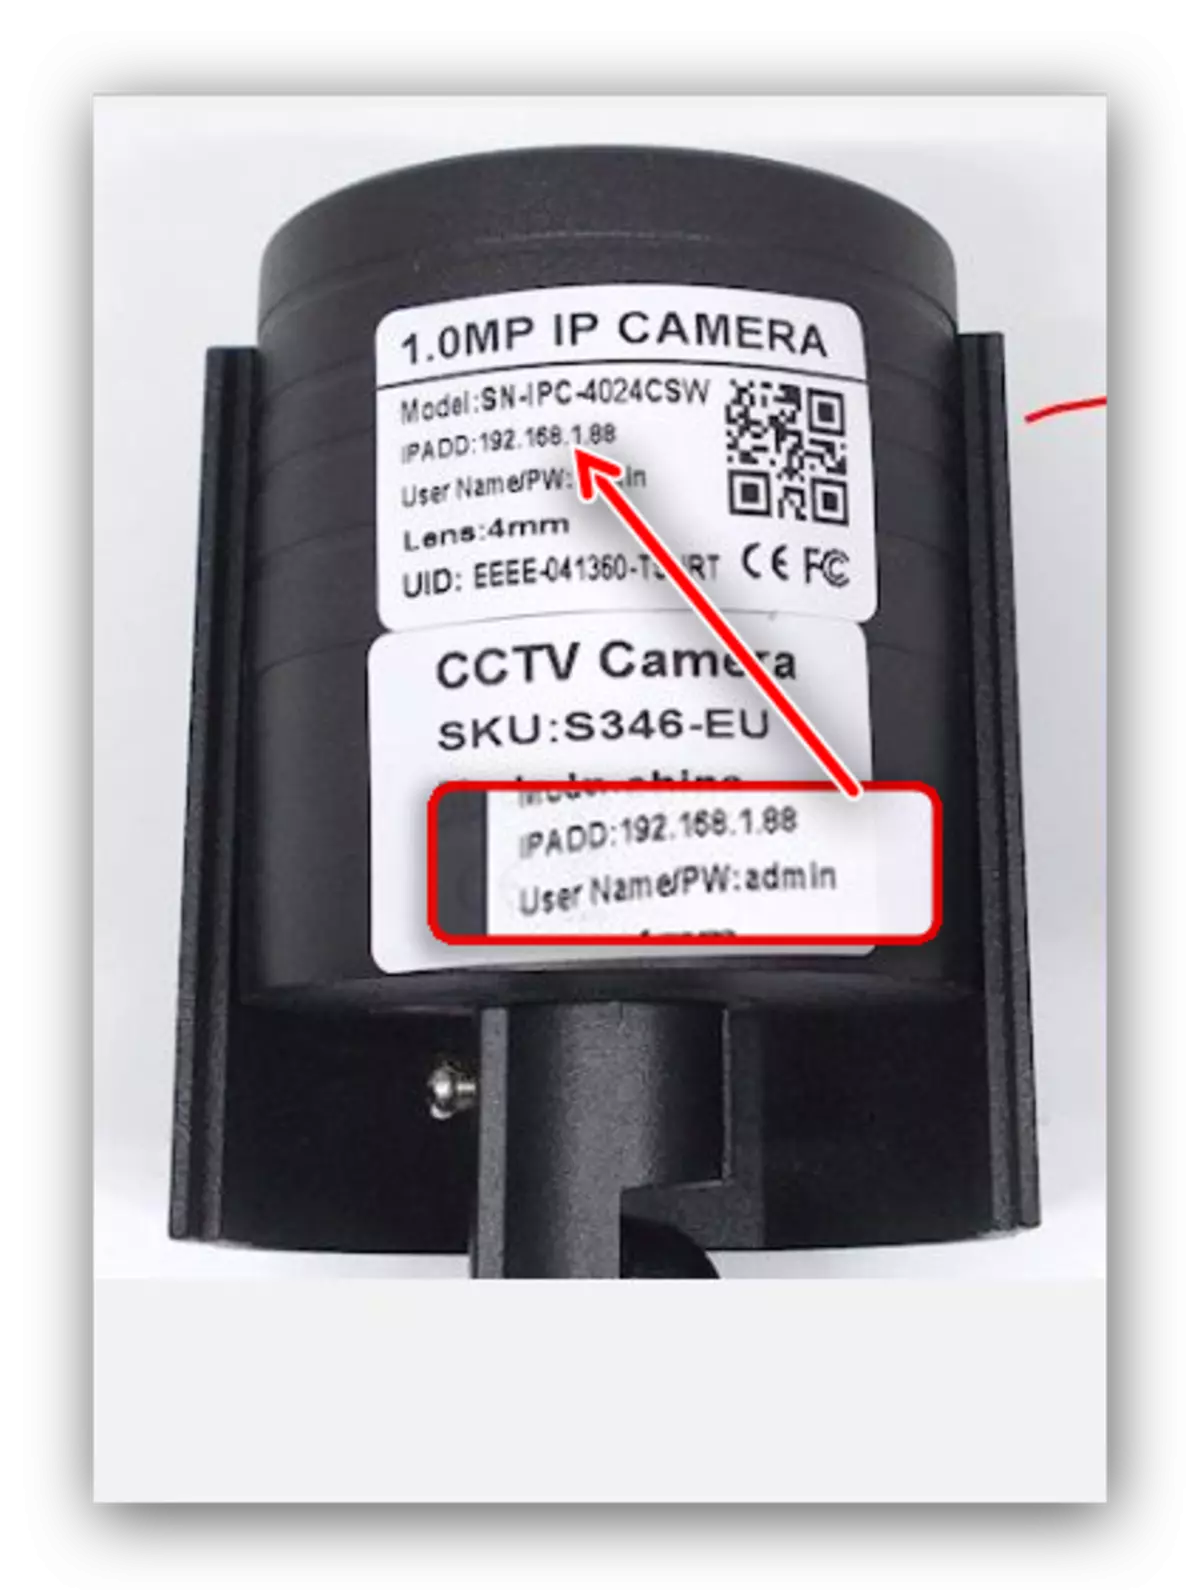 Роутер аркылуу IP камерасын туташтыруу үчүн даректи билип алыңыз